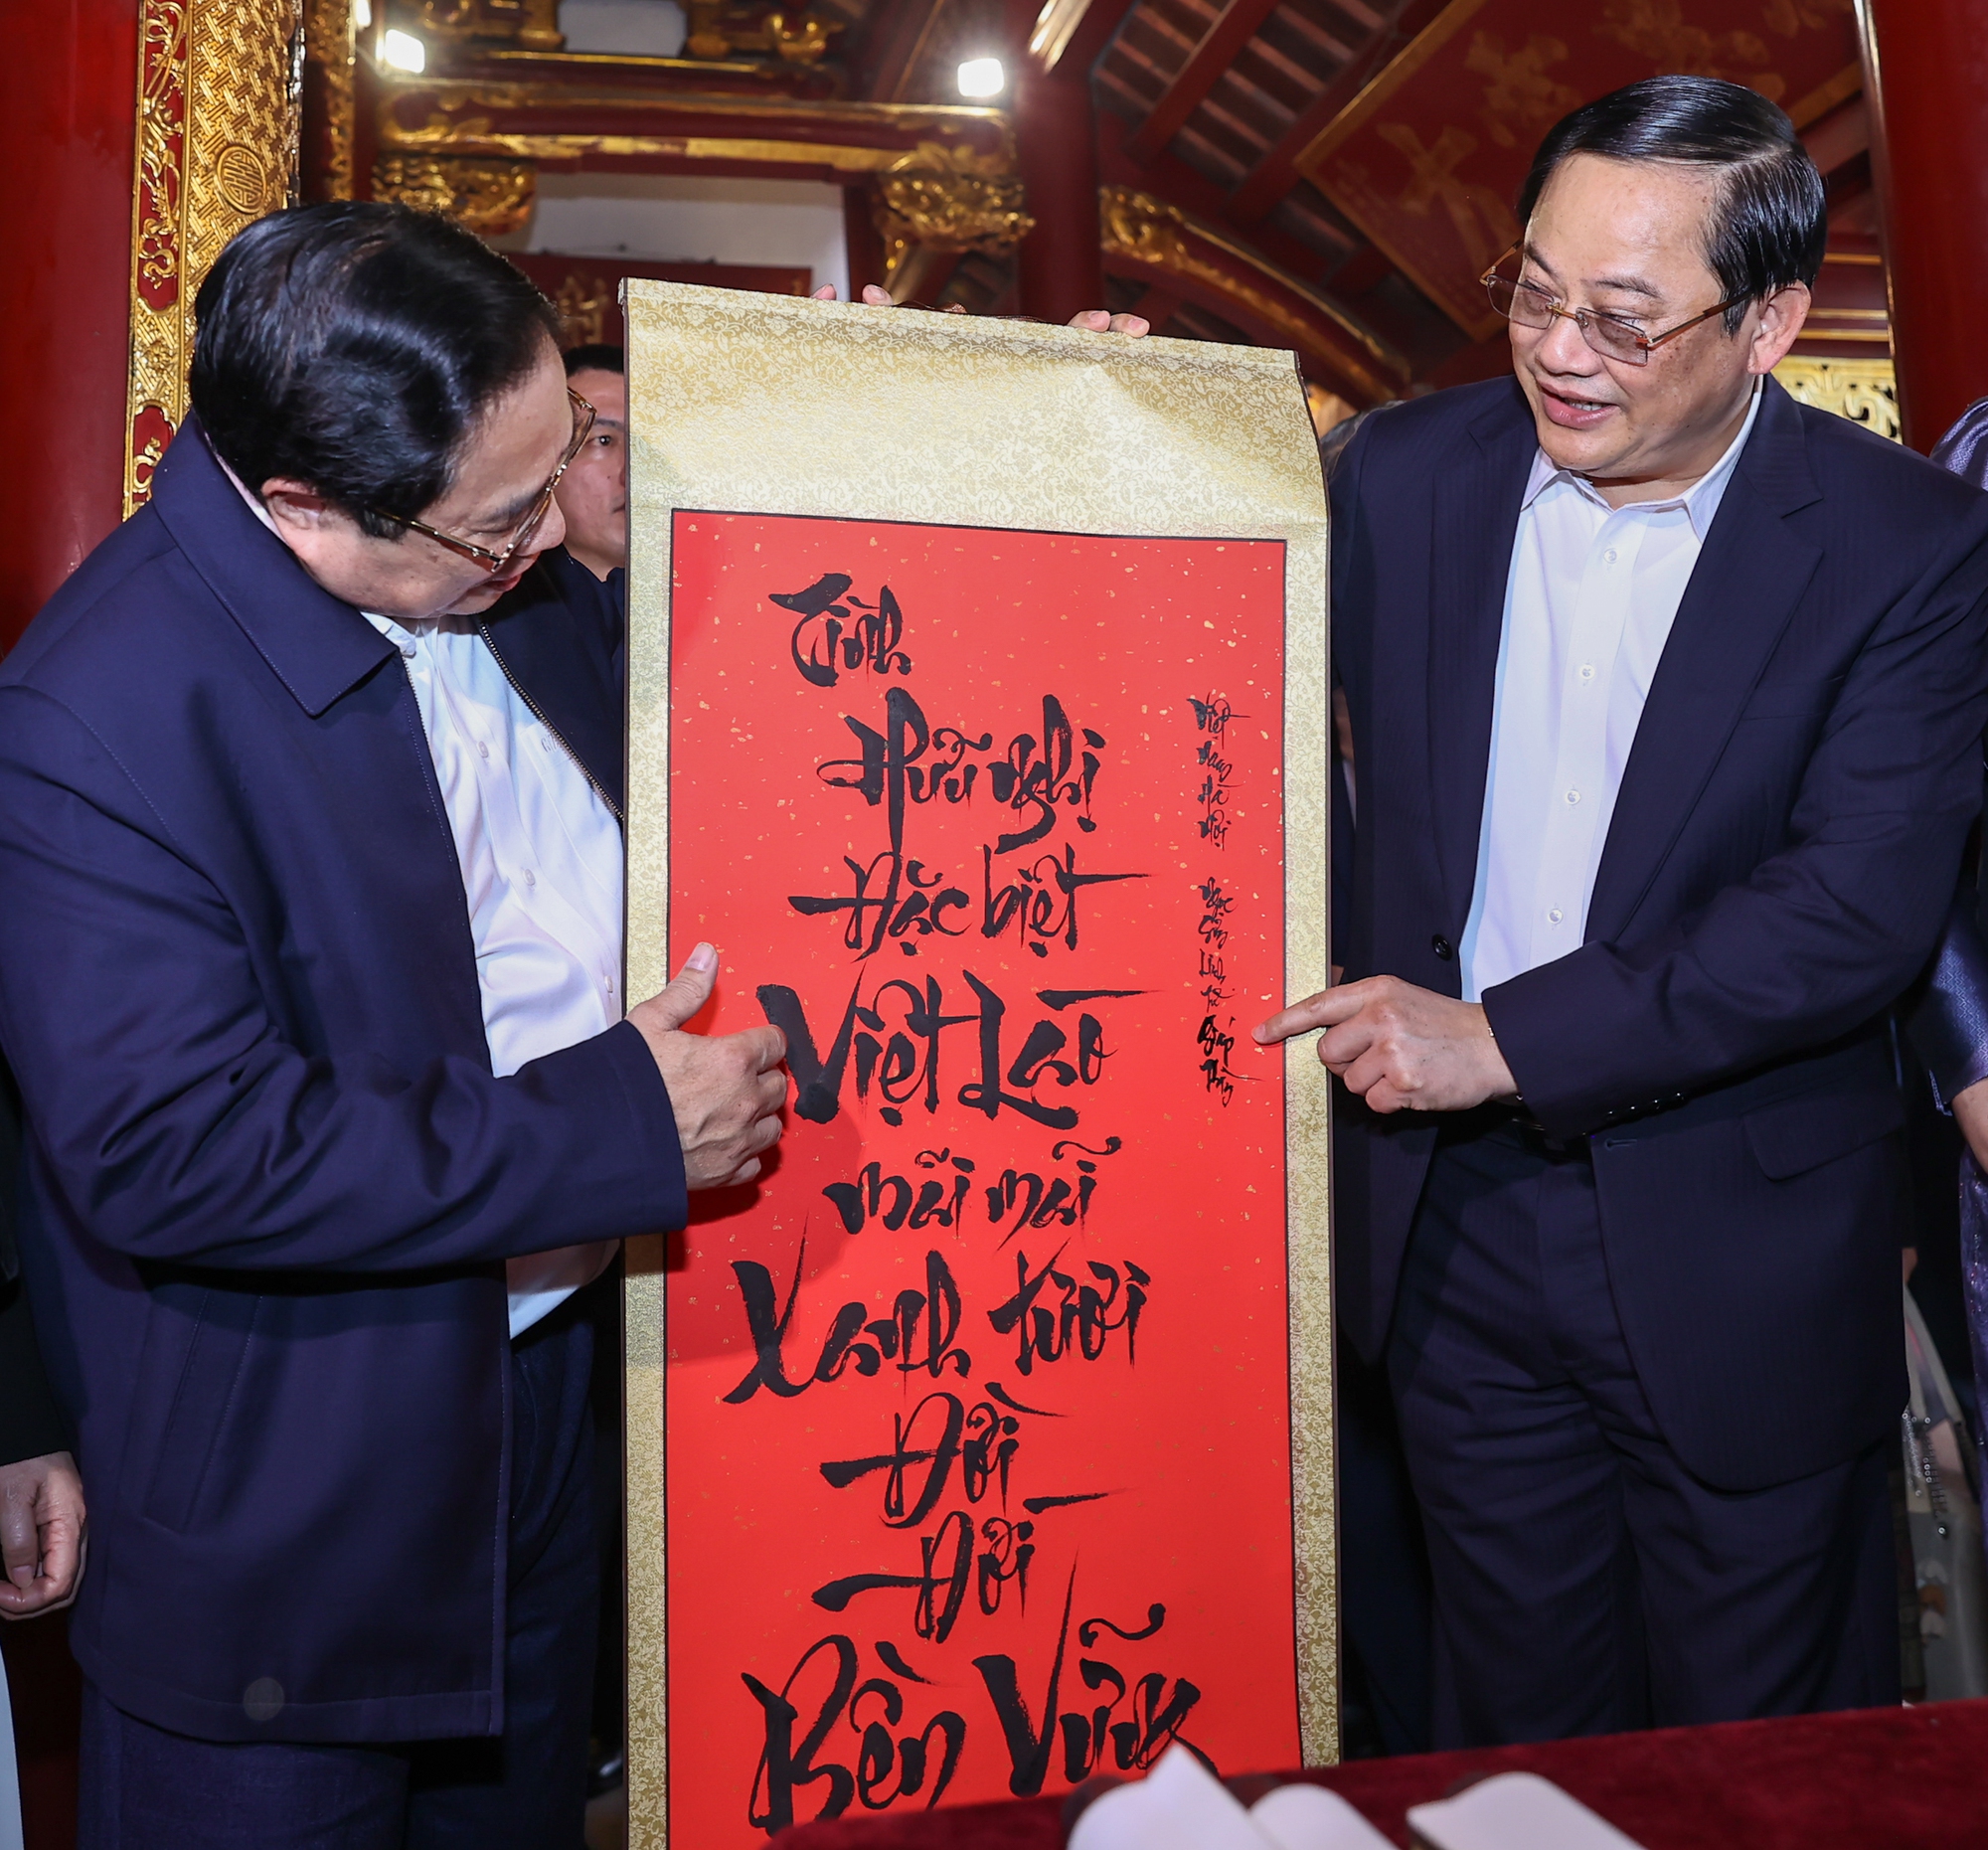 Thủ tướng Phạm Minh Chính tặng Thủ tướng Sonexay Siphandone bức thư pháp về tình hữu nghị đặc biệt Việt-Lào - Ảnh: VGP/Nhật Bắc